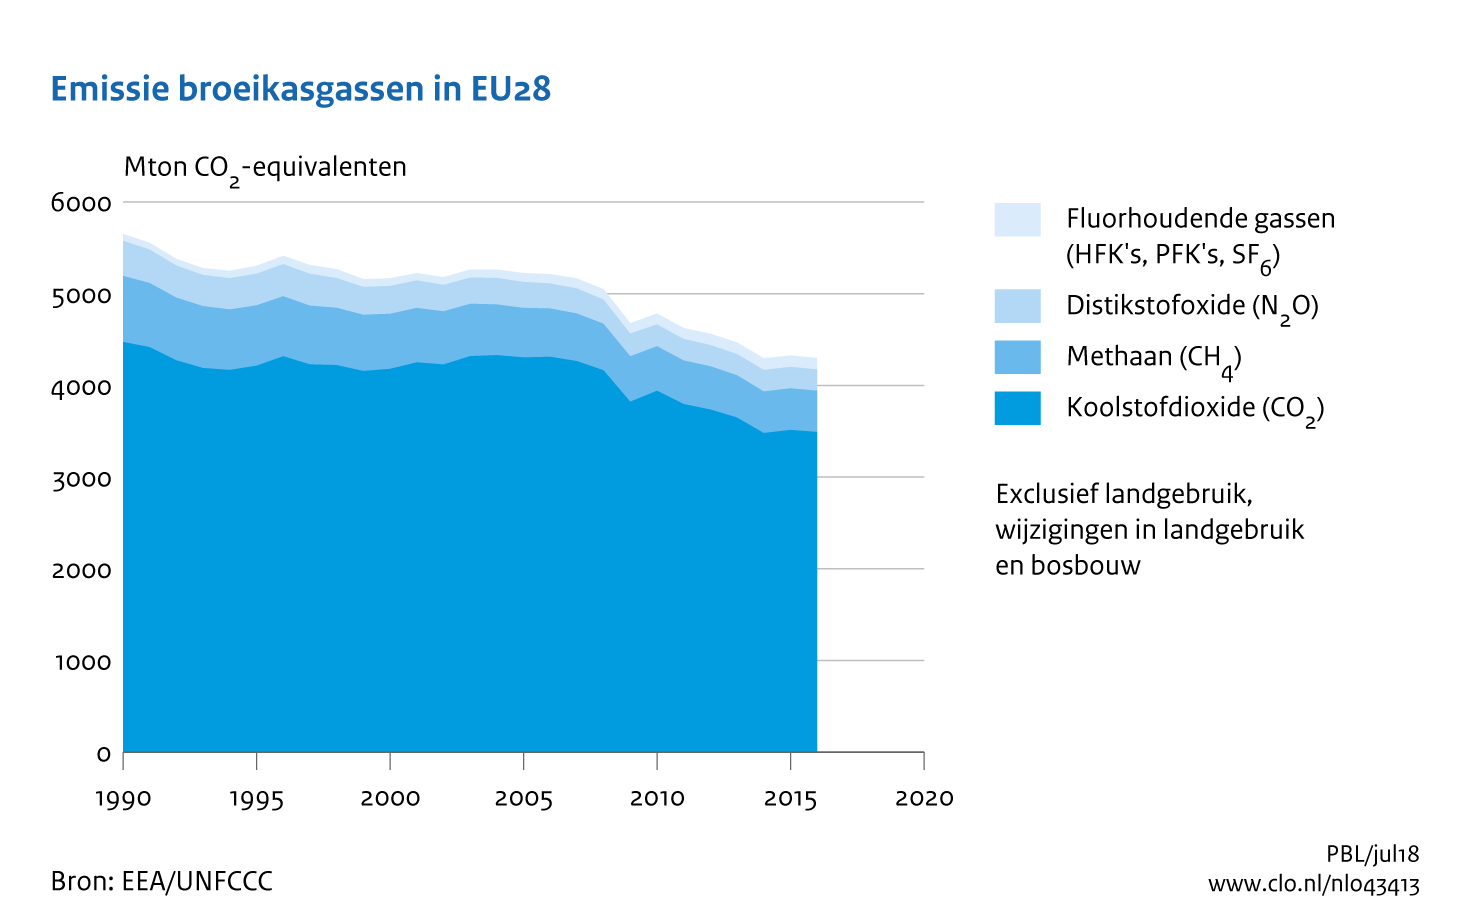 Figuur Emissie broeikasgassen in Europa (EU-28), 1990-2016. In de rest van de tekst wordt deze figuur uitgebreider uitgelegd.